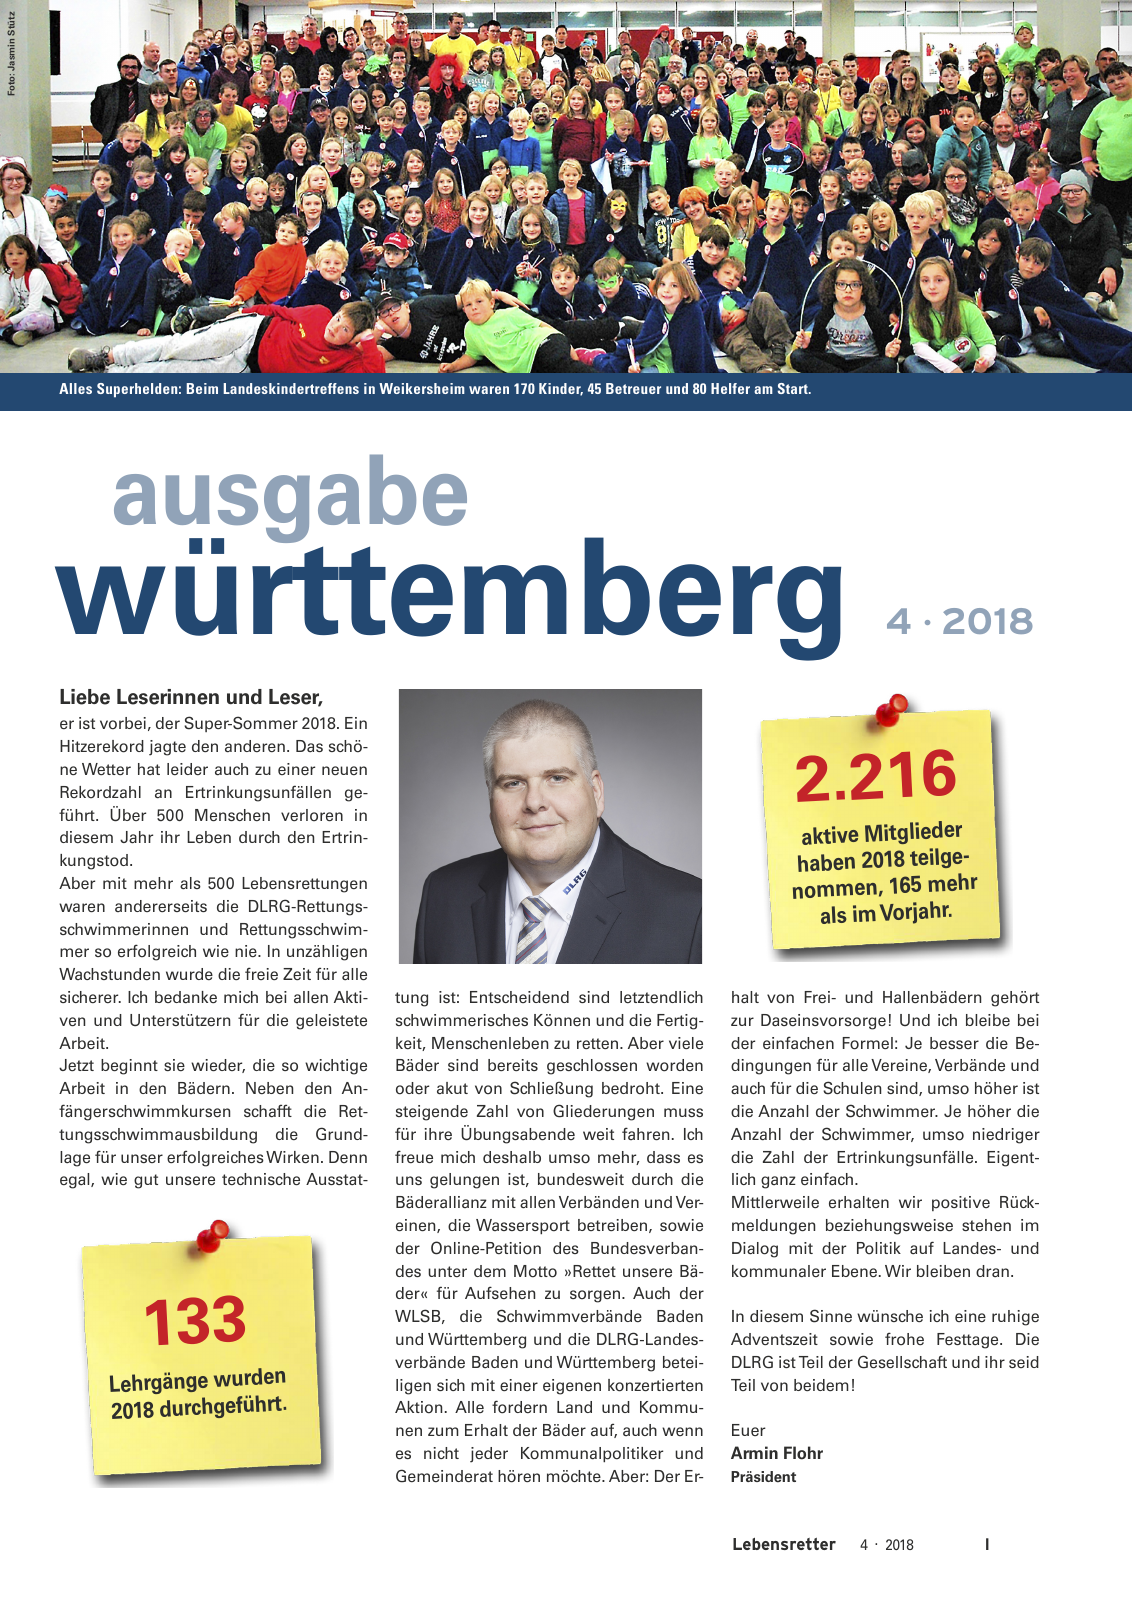 Vorschau Lebensretter 4/2018 - Regionalausgabe Württemberg Seite 3